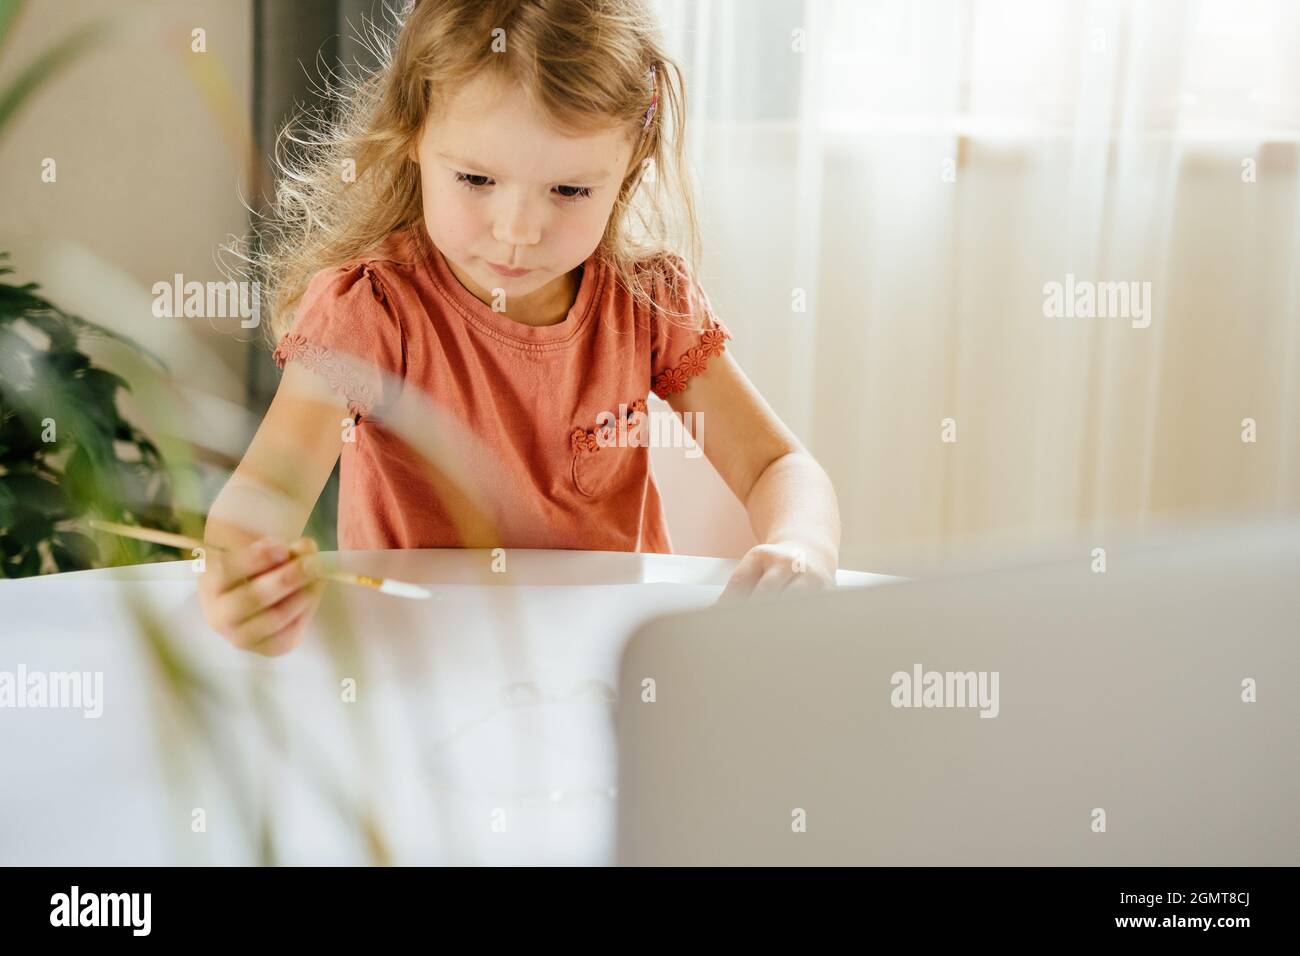 Giovane ragazza cute che spende un tempo disegnare usando le lezioni in linea sul laptop. Apprendimento a distanza, formazione online. Foto Stock